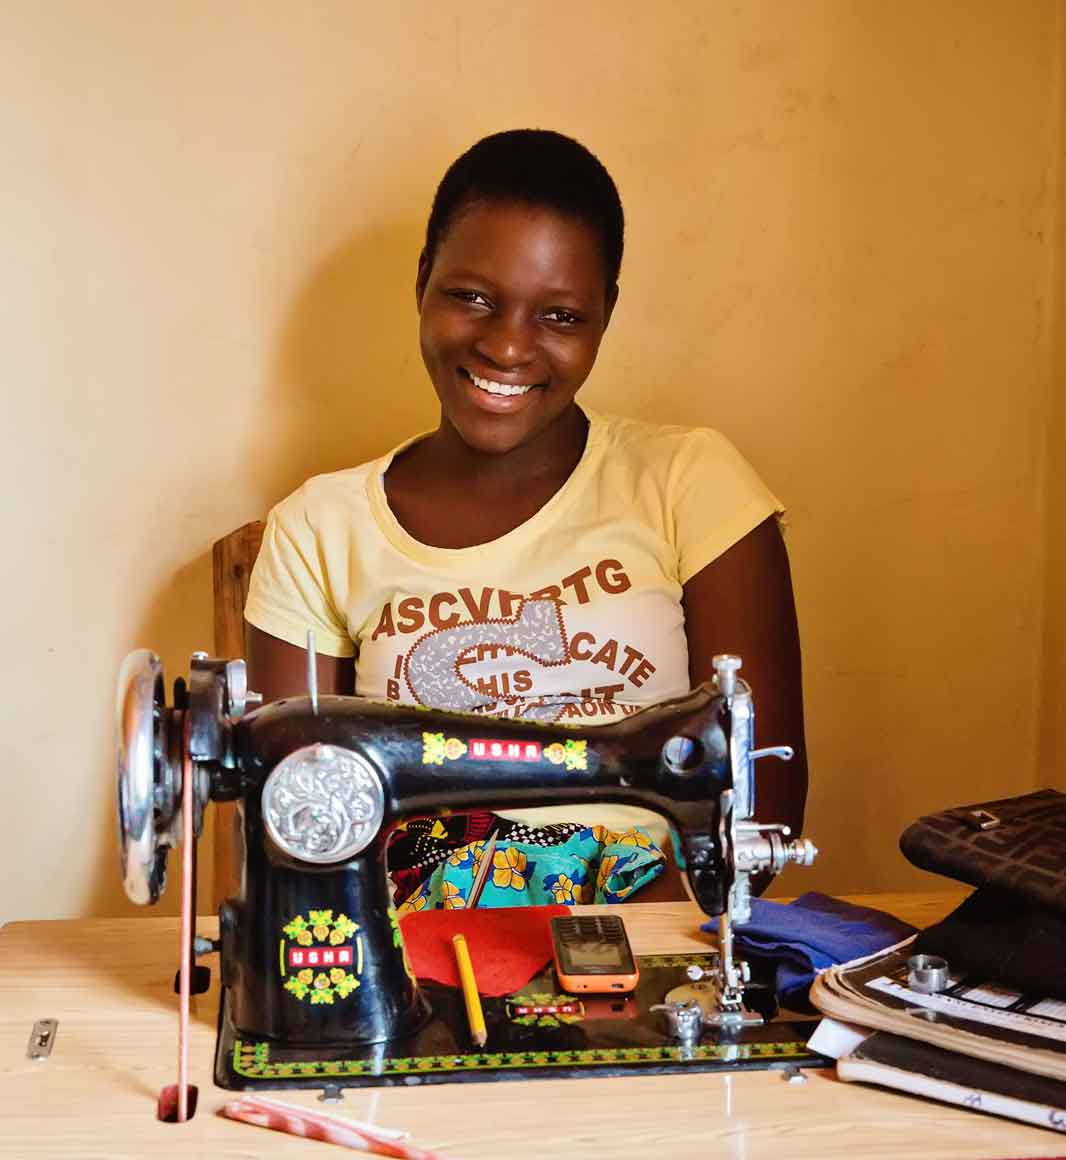 Sewing at Mayamiko Trust in Malawi